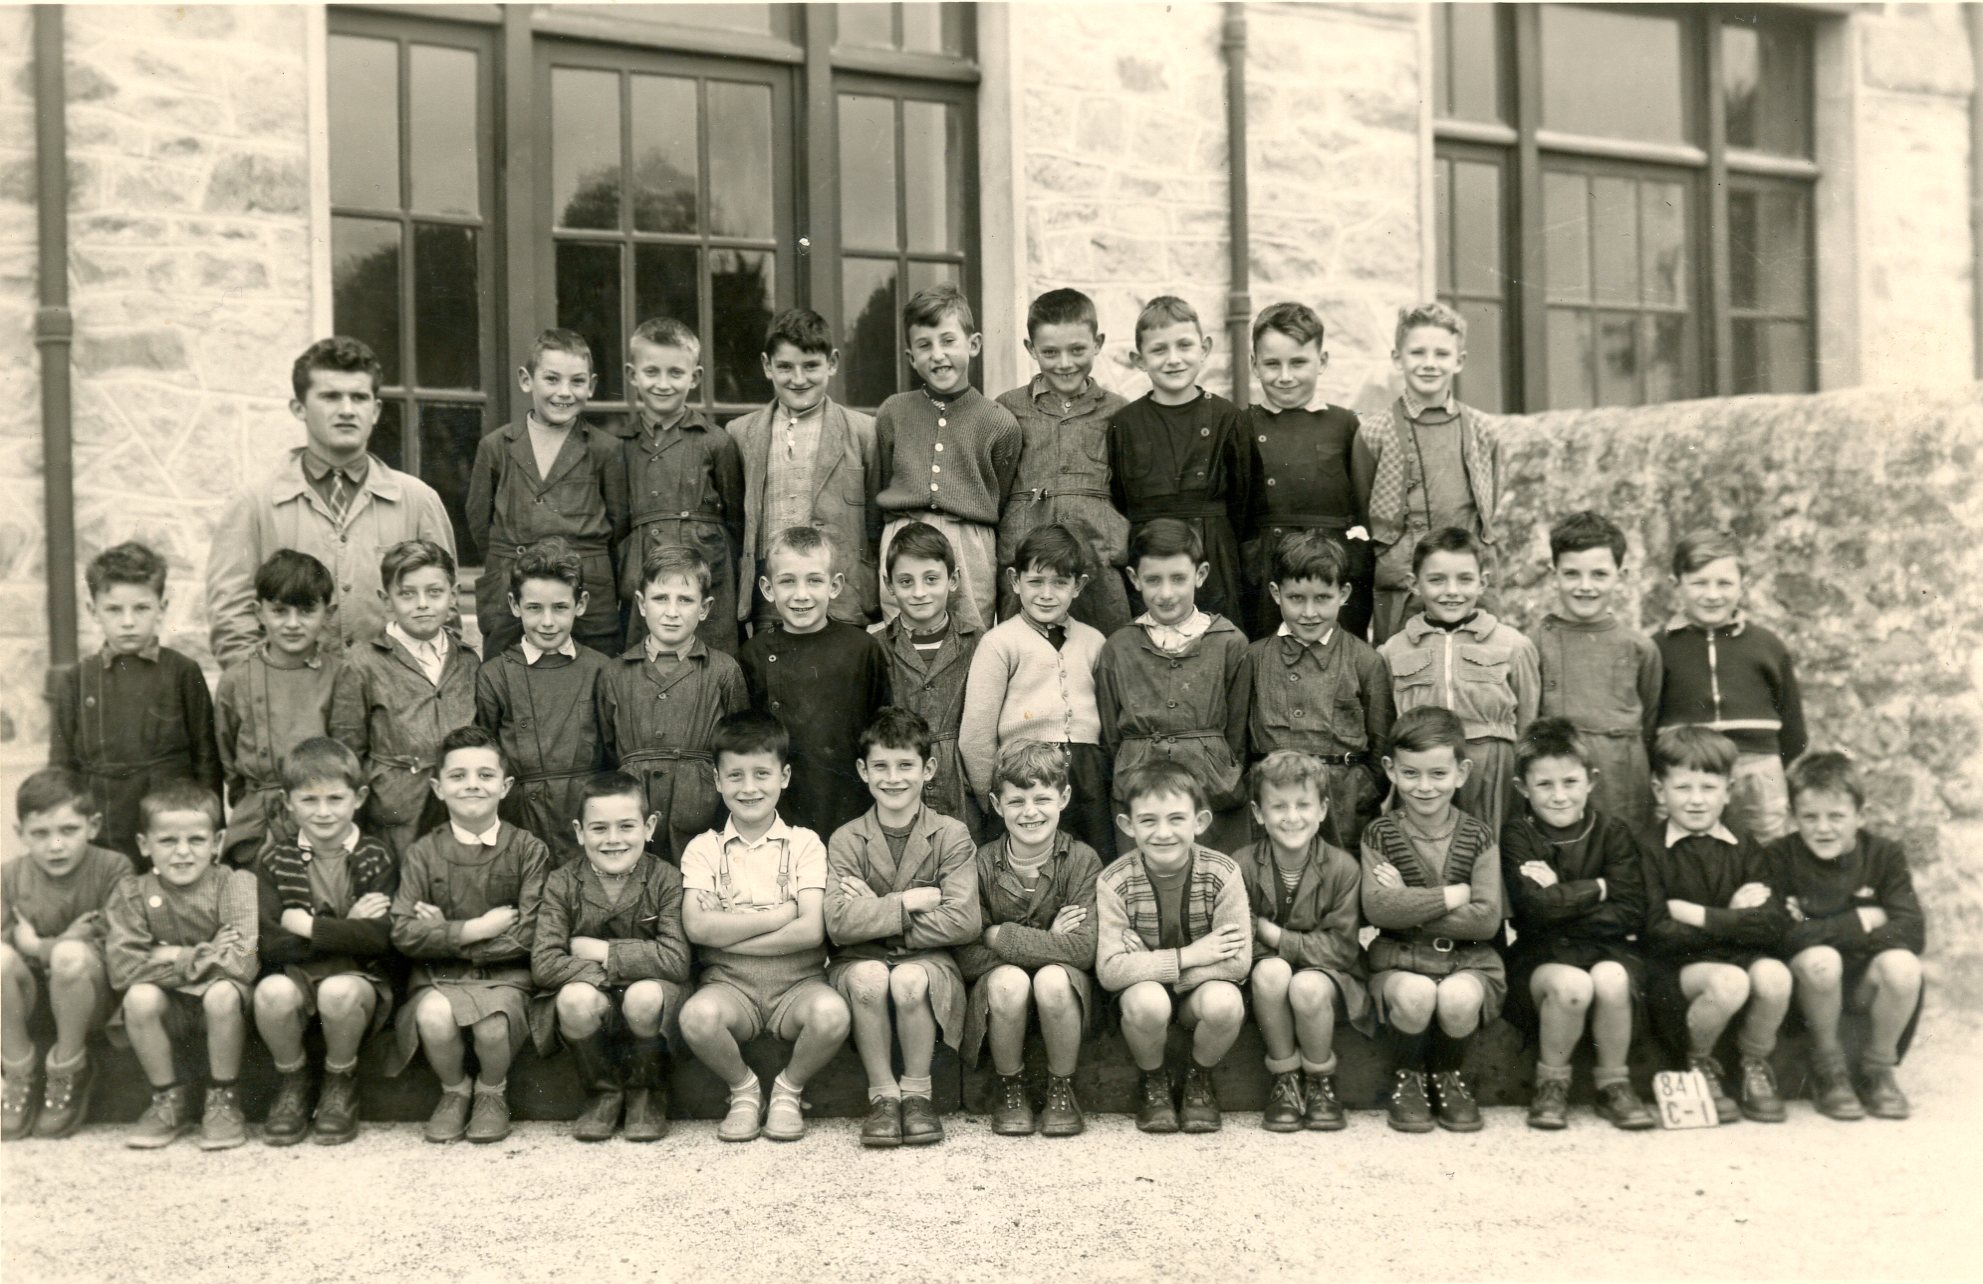 Les bons points et les cahiers à l'école : les miens à Nexon de 1953 à 1957  et ceux de mon père en 1927 à Gleixhe, petit village de Belgique.